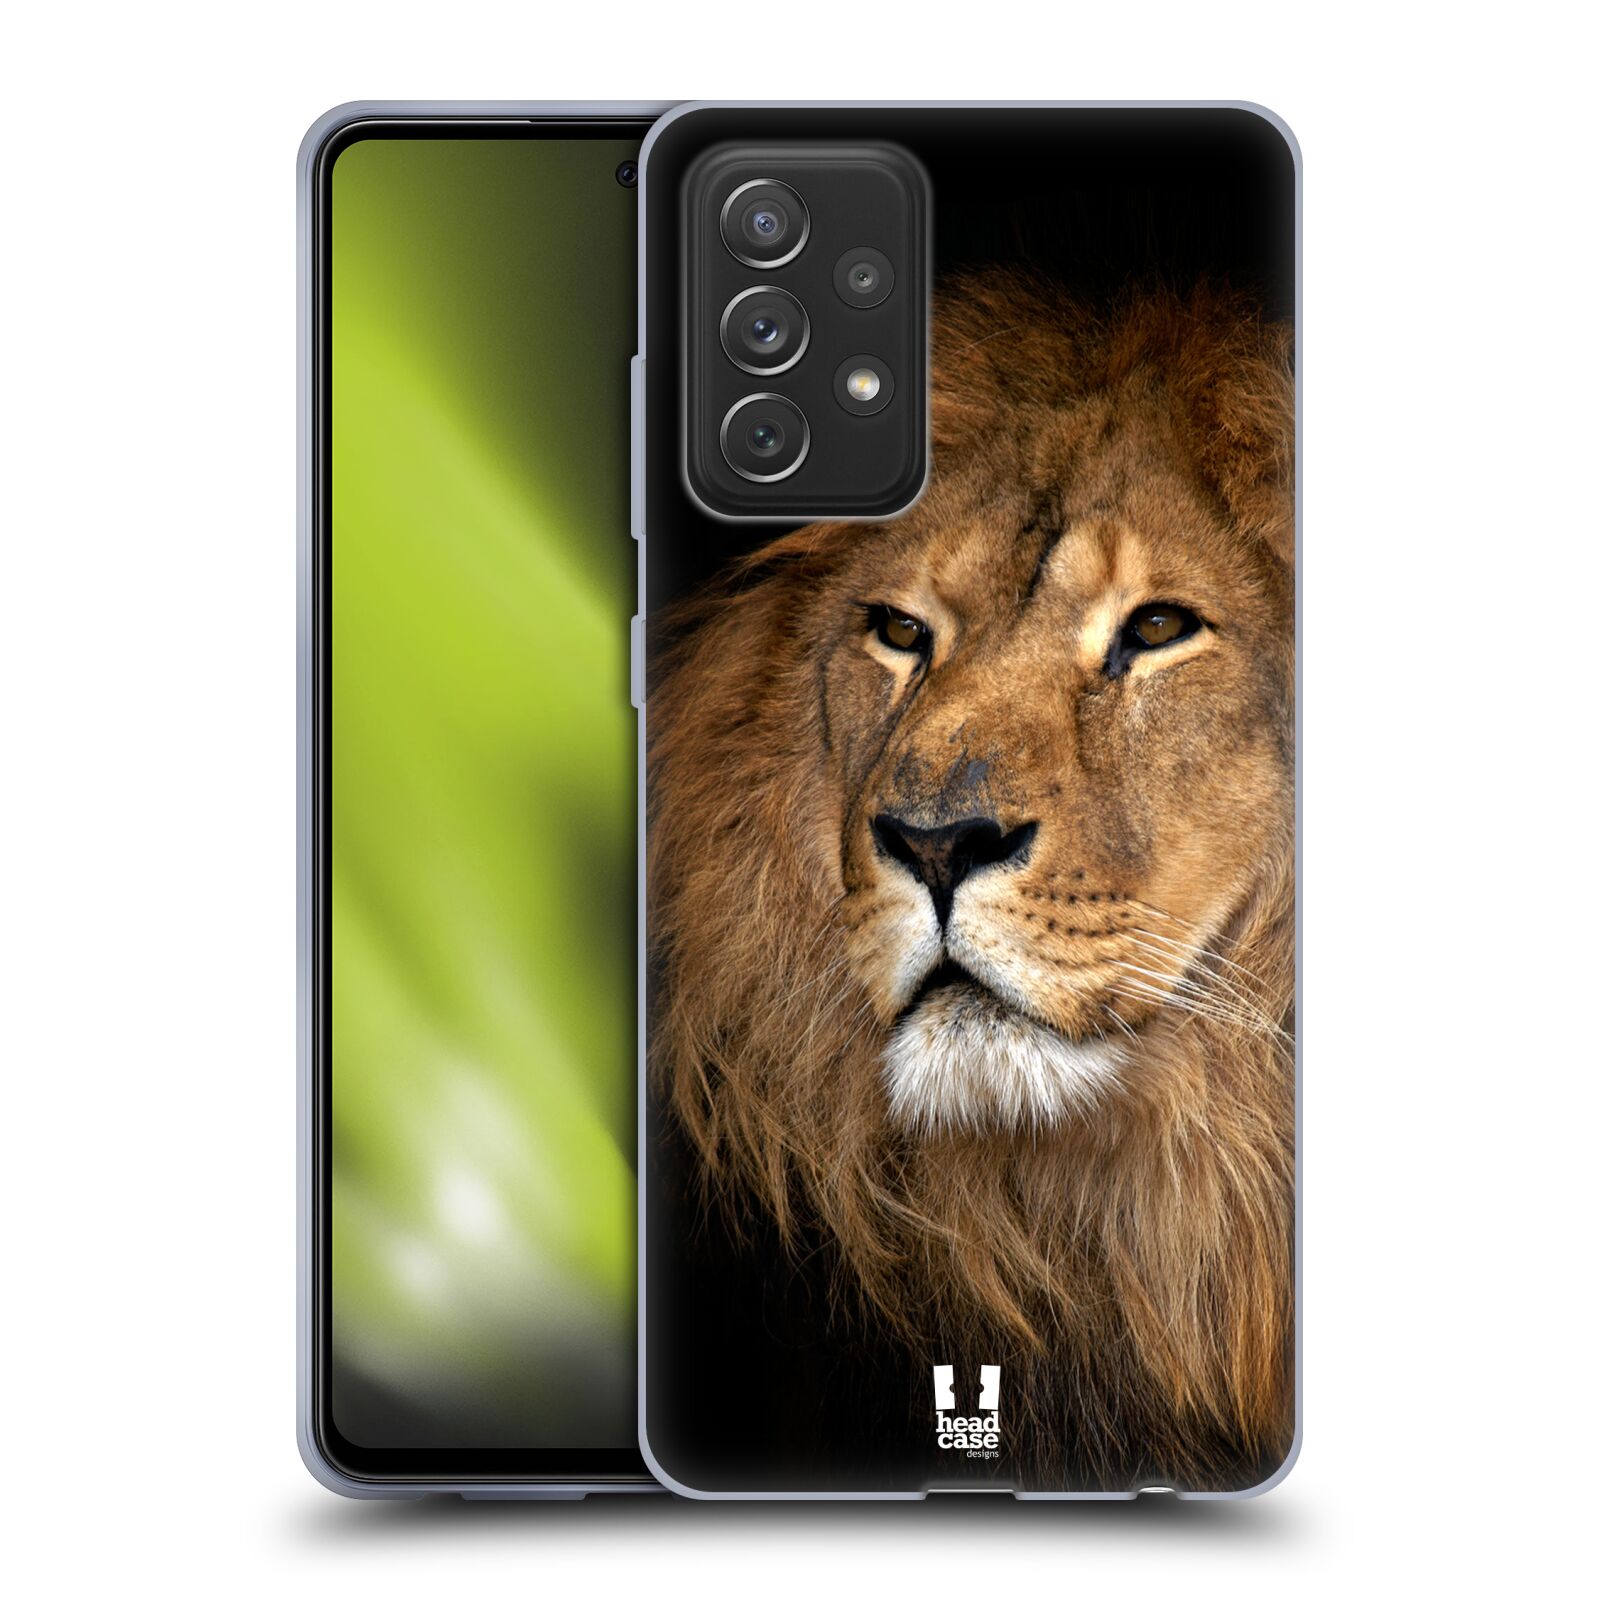 Zadní obal pro mobil Samsung Galaxy A72 / A72 5G - HEAD CASE - Svět zvířat král zvířat Lev